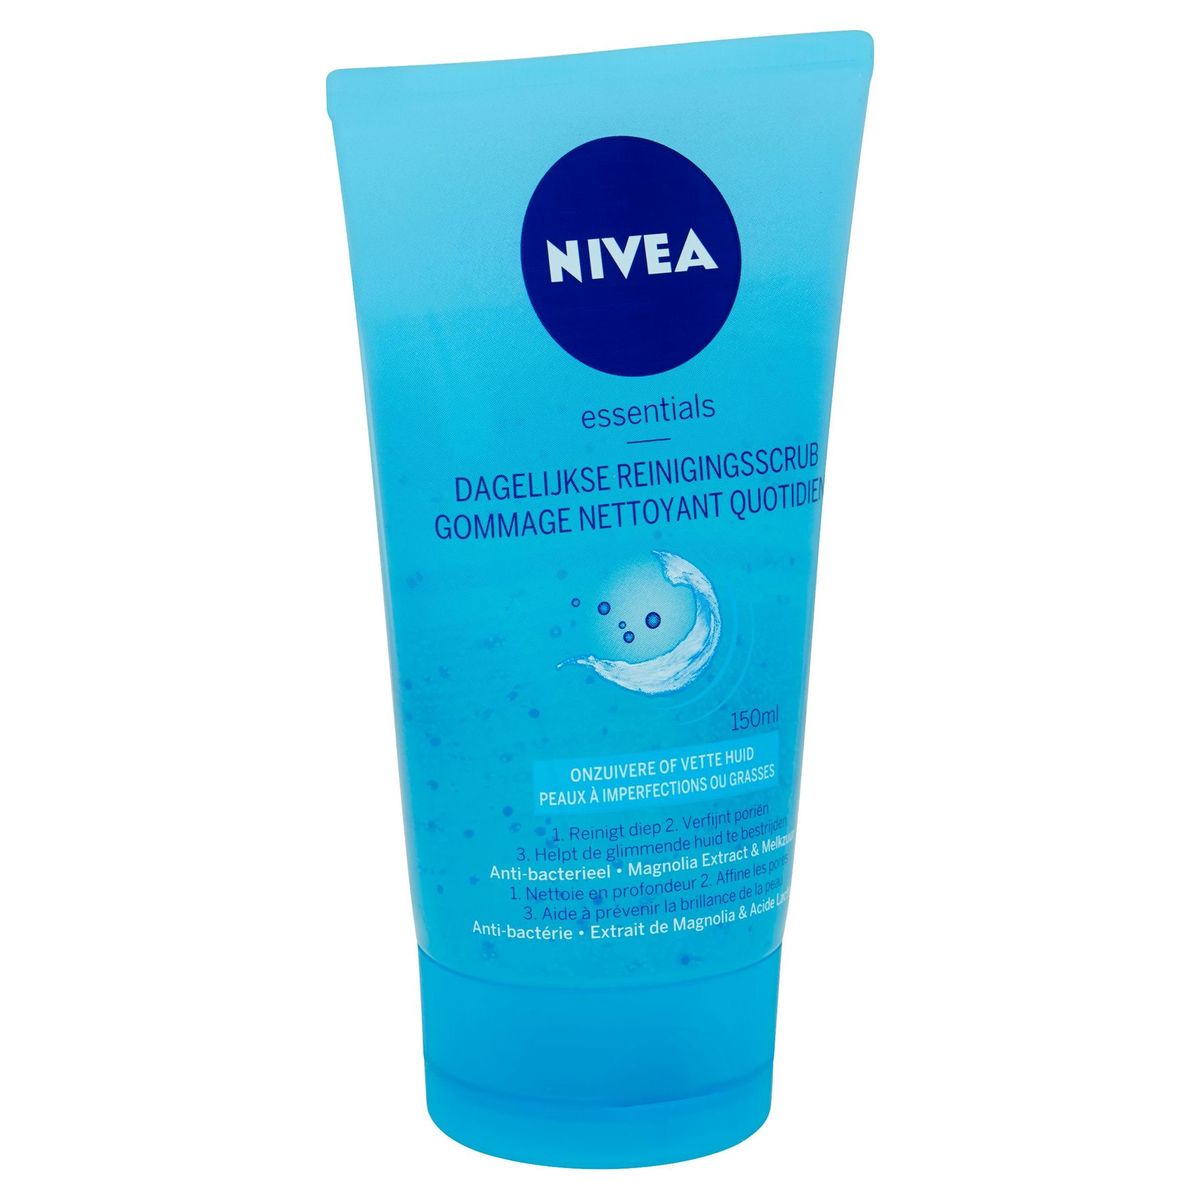 Nivea Essentials Dagelijkse Reinigingsscrub 150 ml